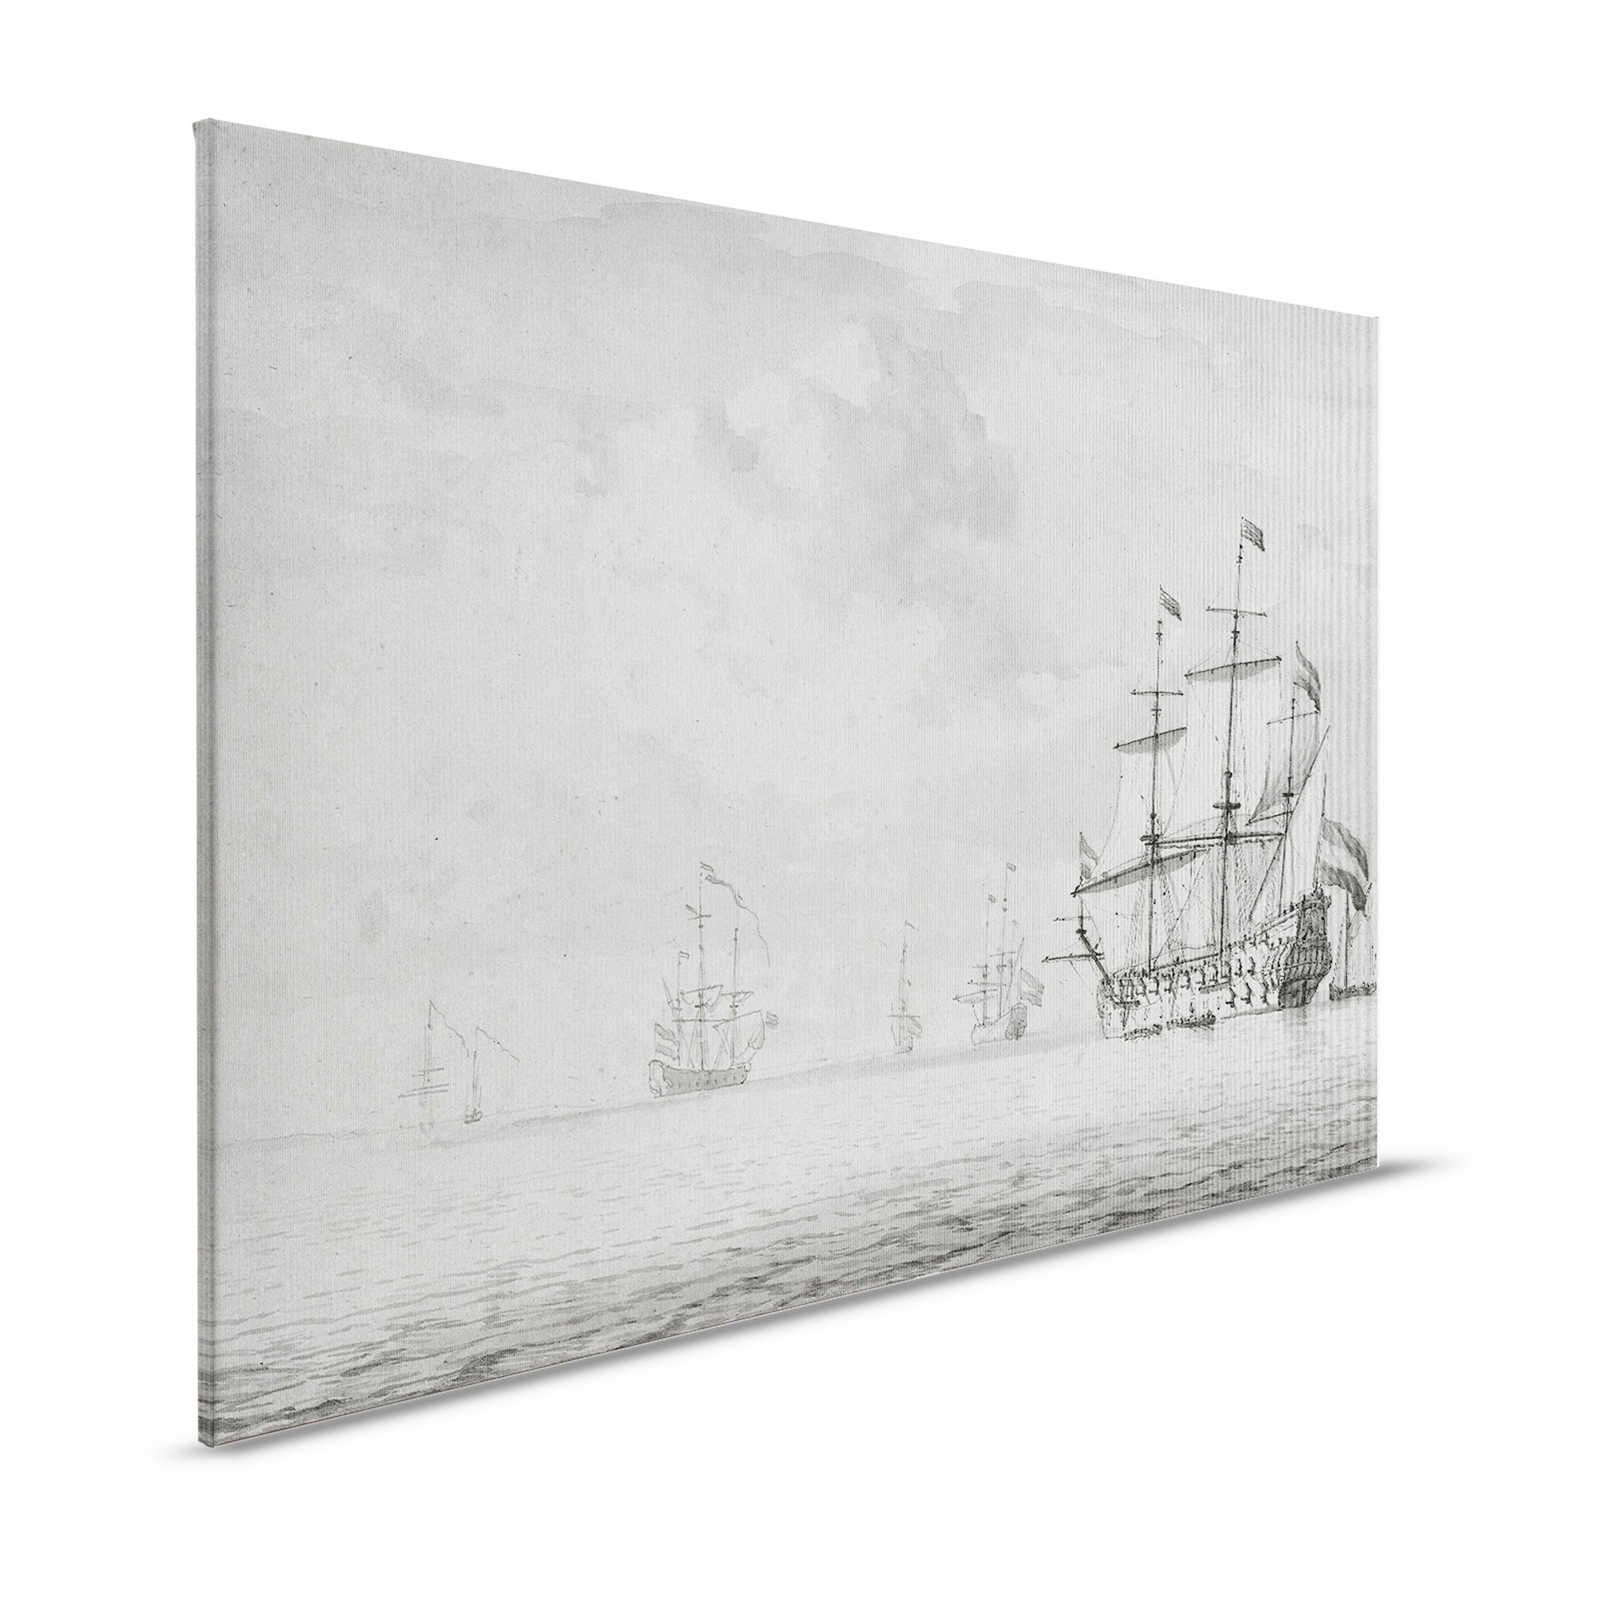 On the Sea 2 - Toile gris-beige Bateaux style peinture vintage - 1,20 m x 0,80 m
